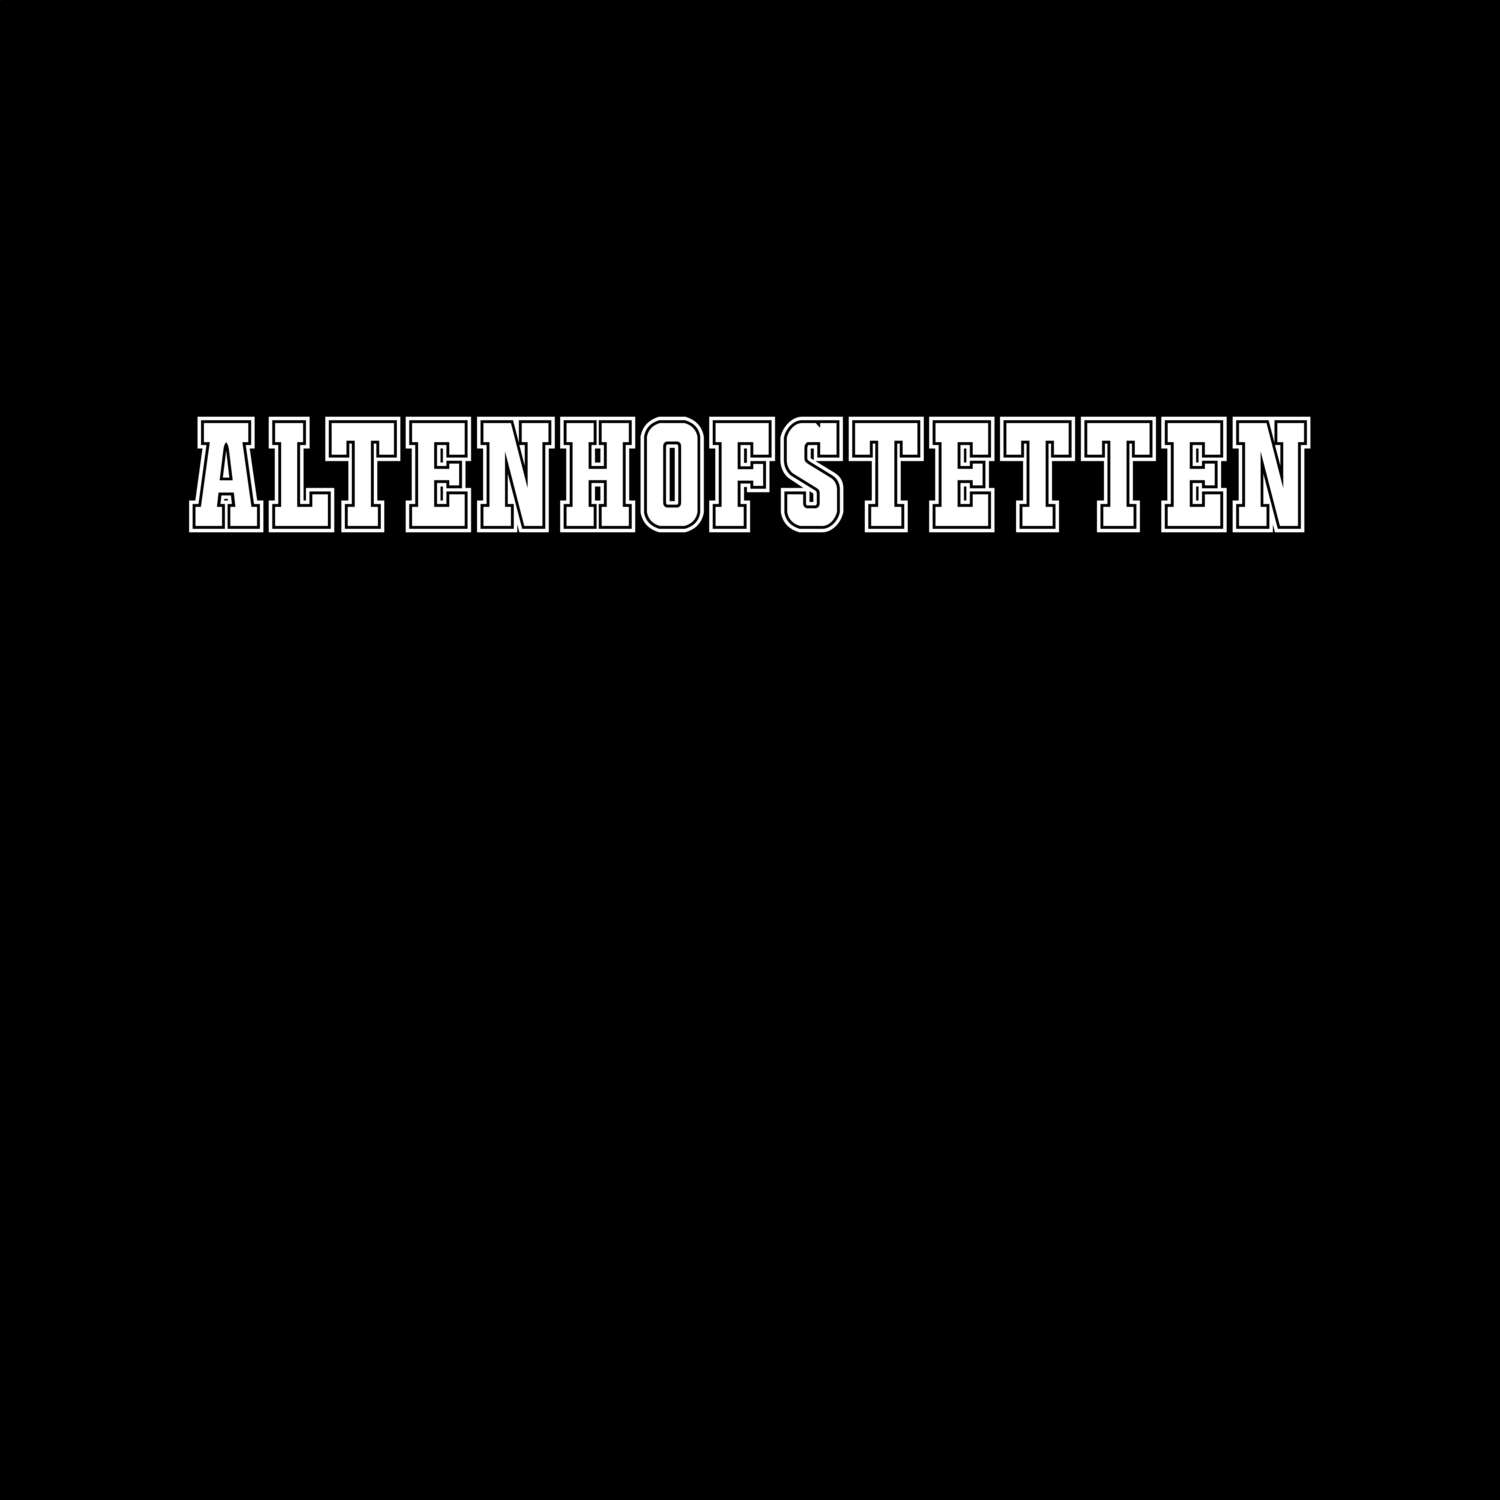 Altenhofstetten T-Shirt »Classic«